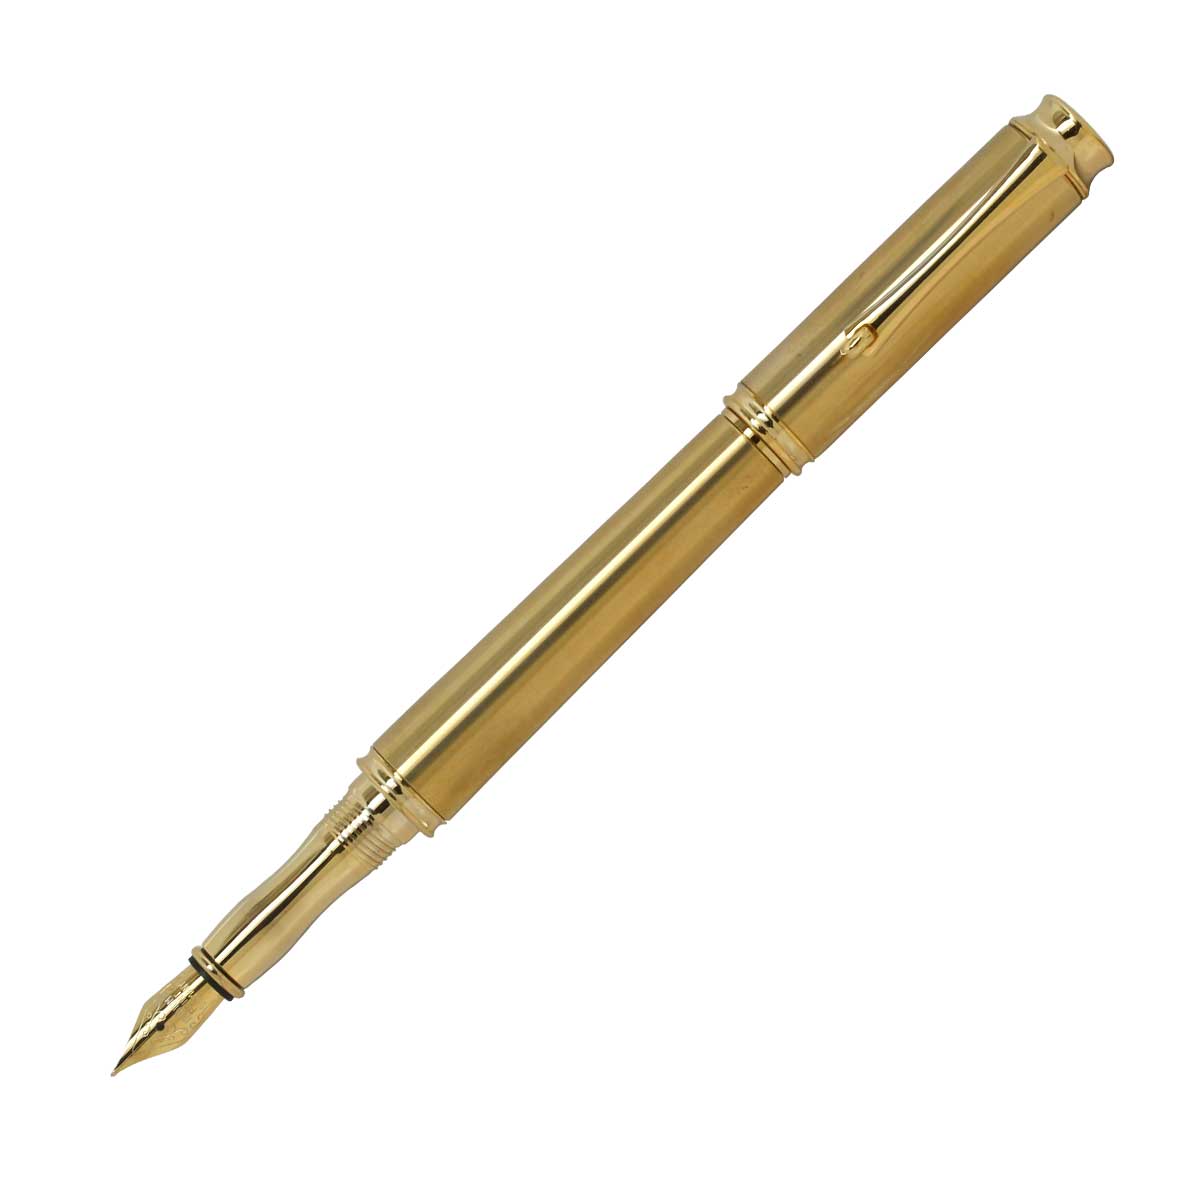 即納可能 名入れ可能 1万円台 その他 両用式 F-STYLE Metal Gold メタルペン 2021年新作入荷 KMM200 万年筆 爆買い送料無料 Pen